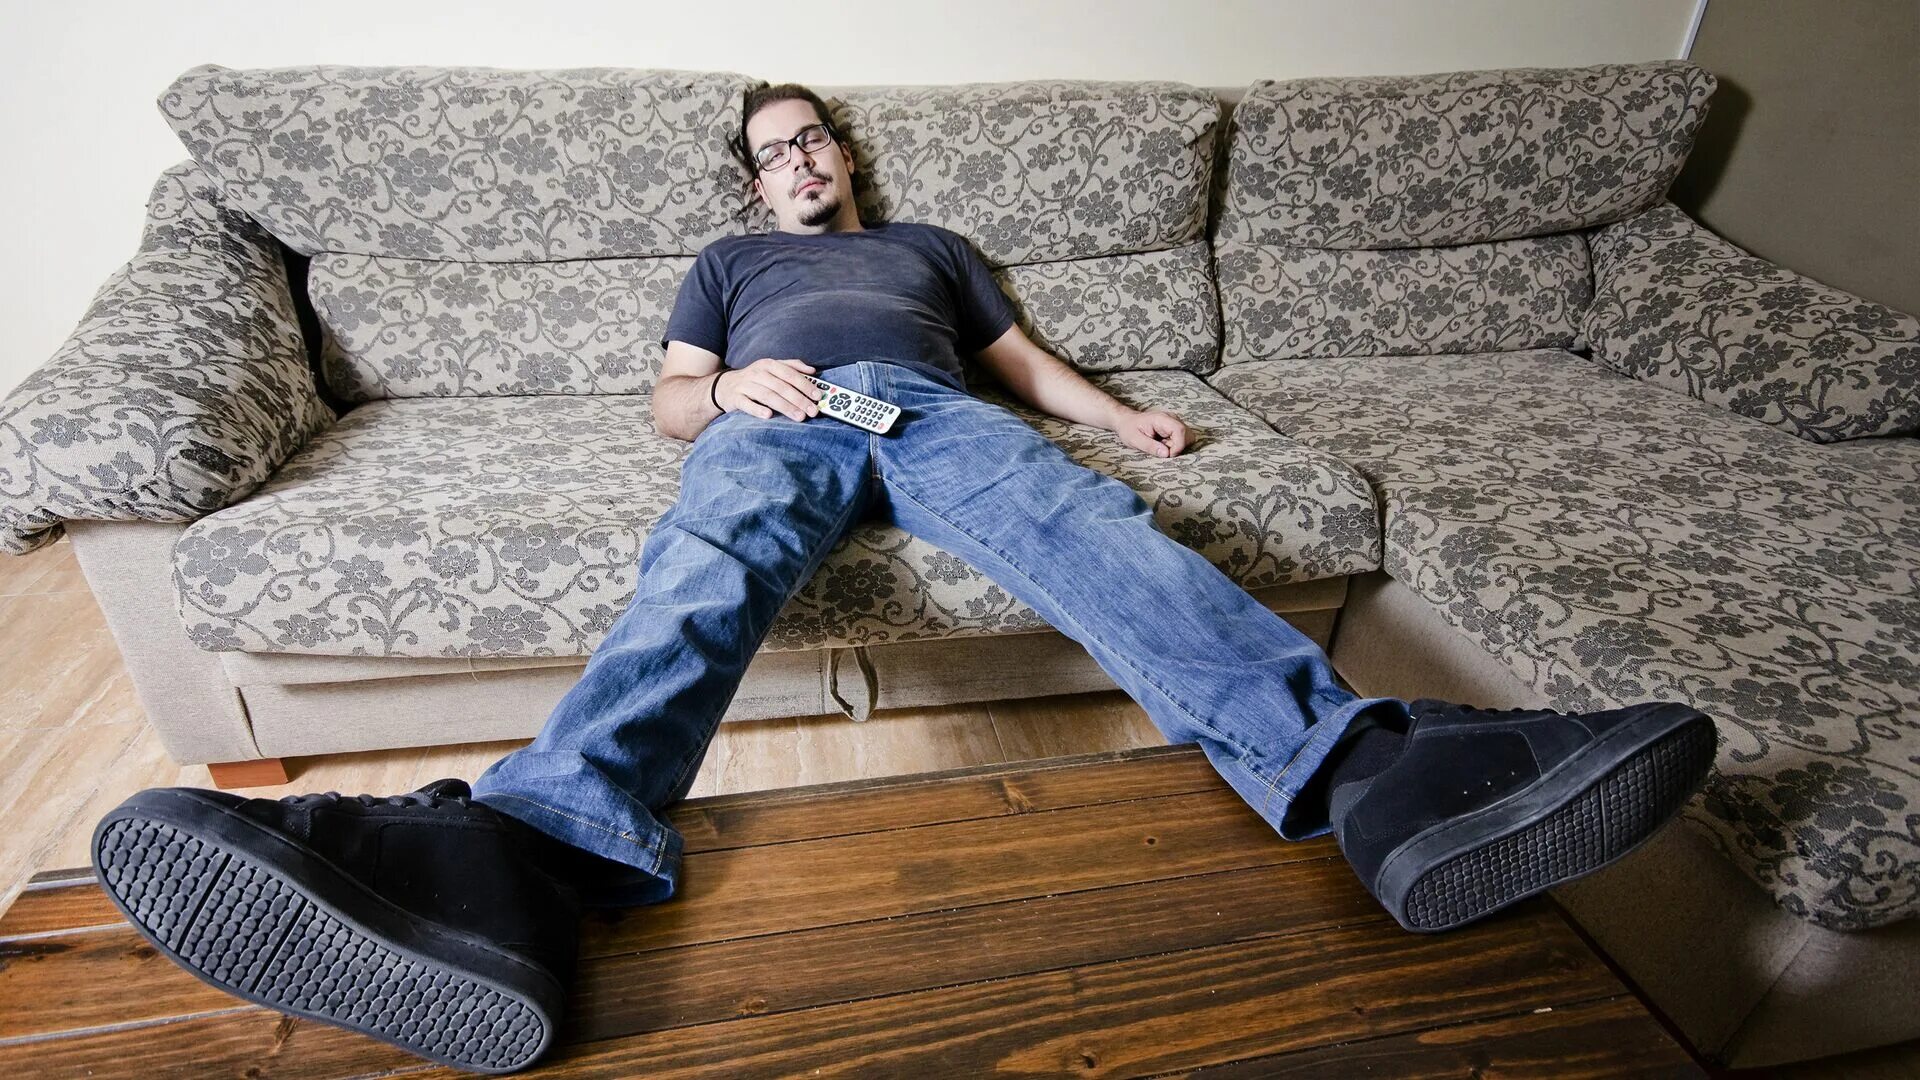 Пассивный мужик. Отдыхает на диване. Мужчина на диване. Человек сидит на диване. Мужик отдыхает на диване.